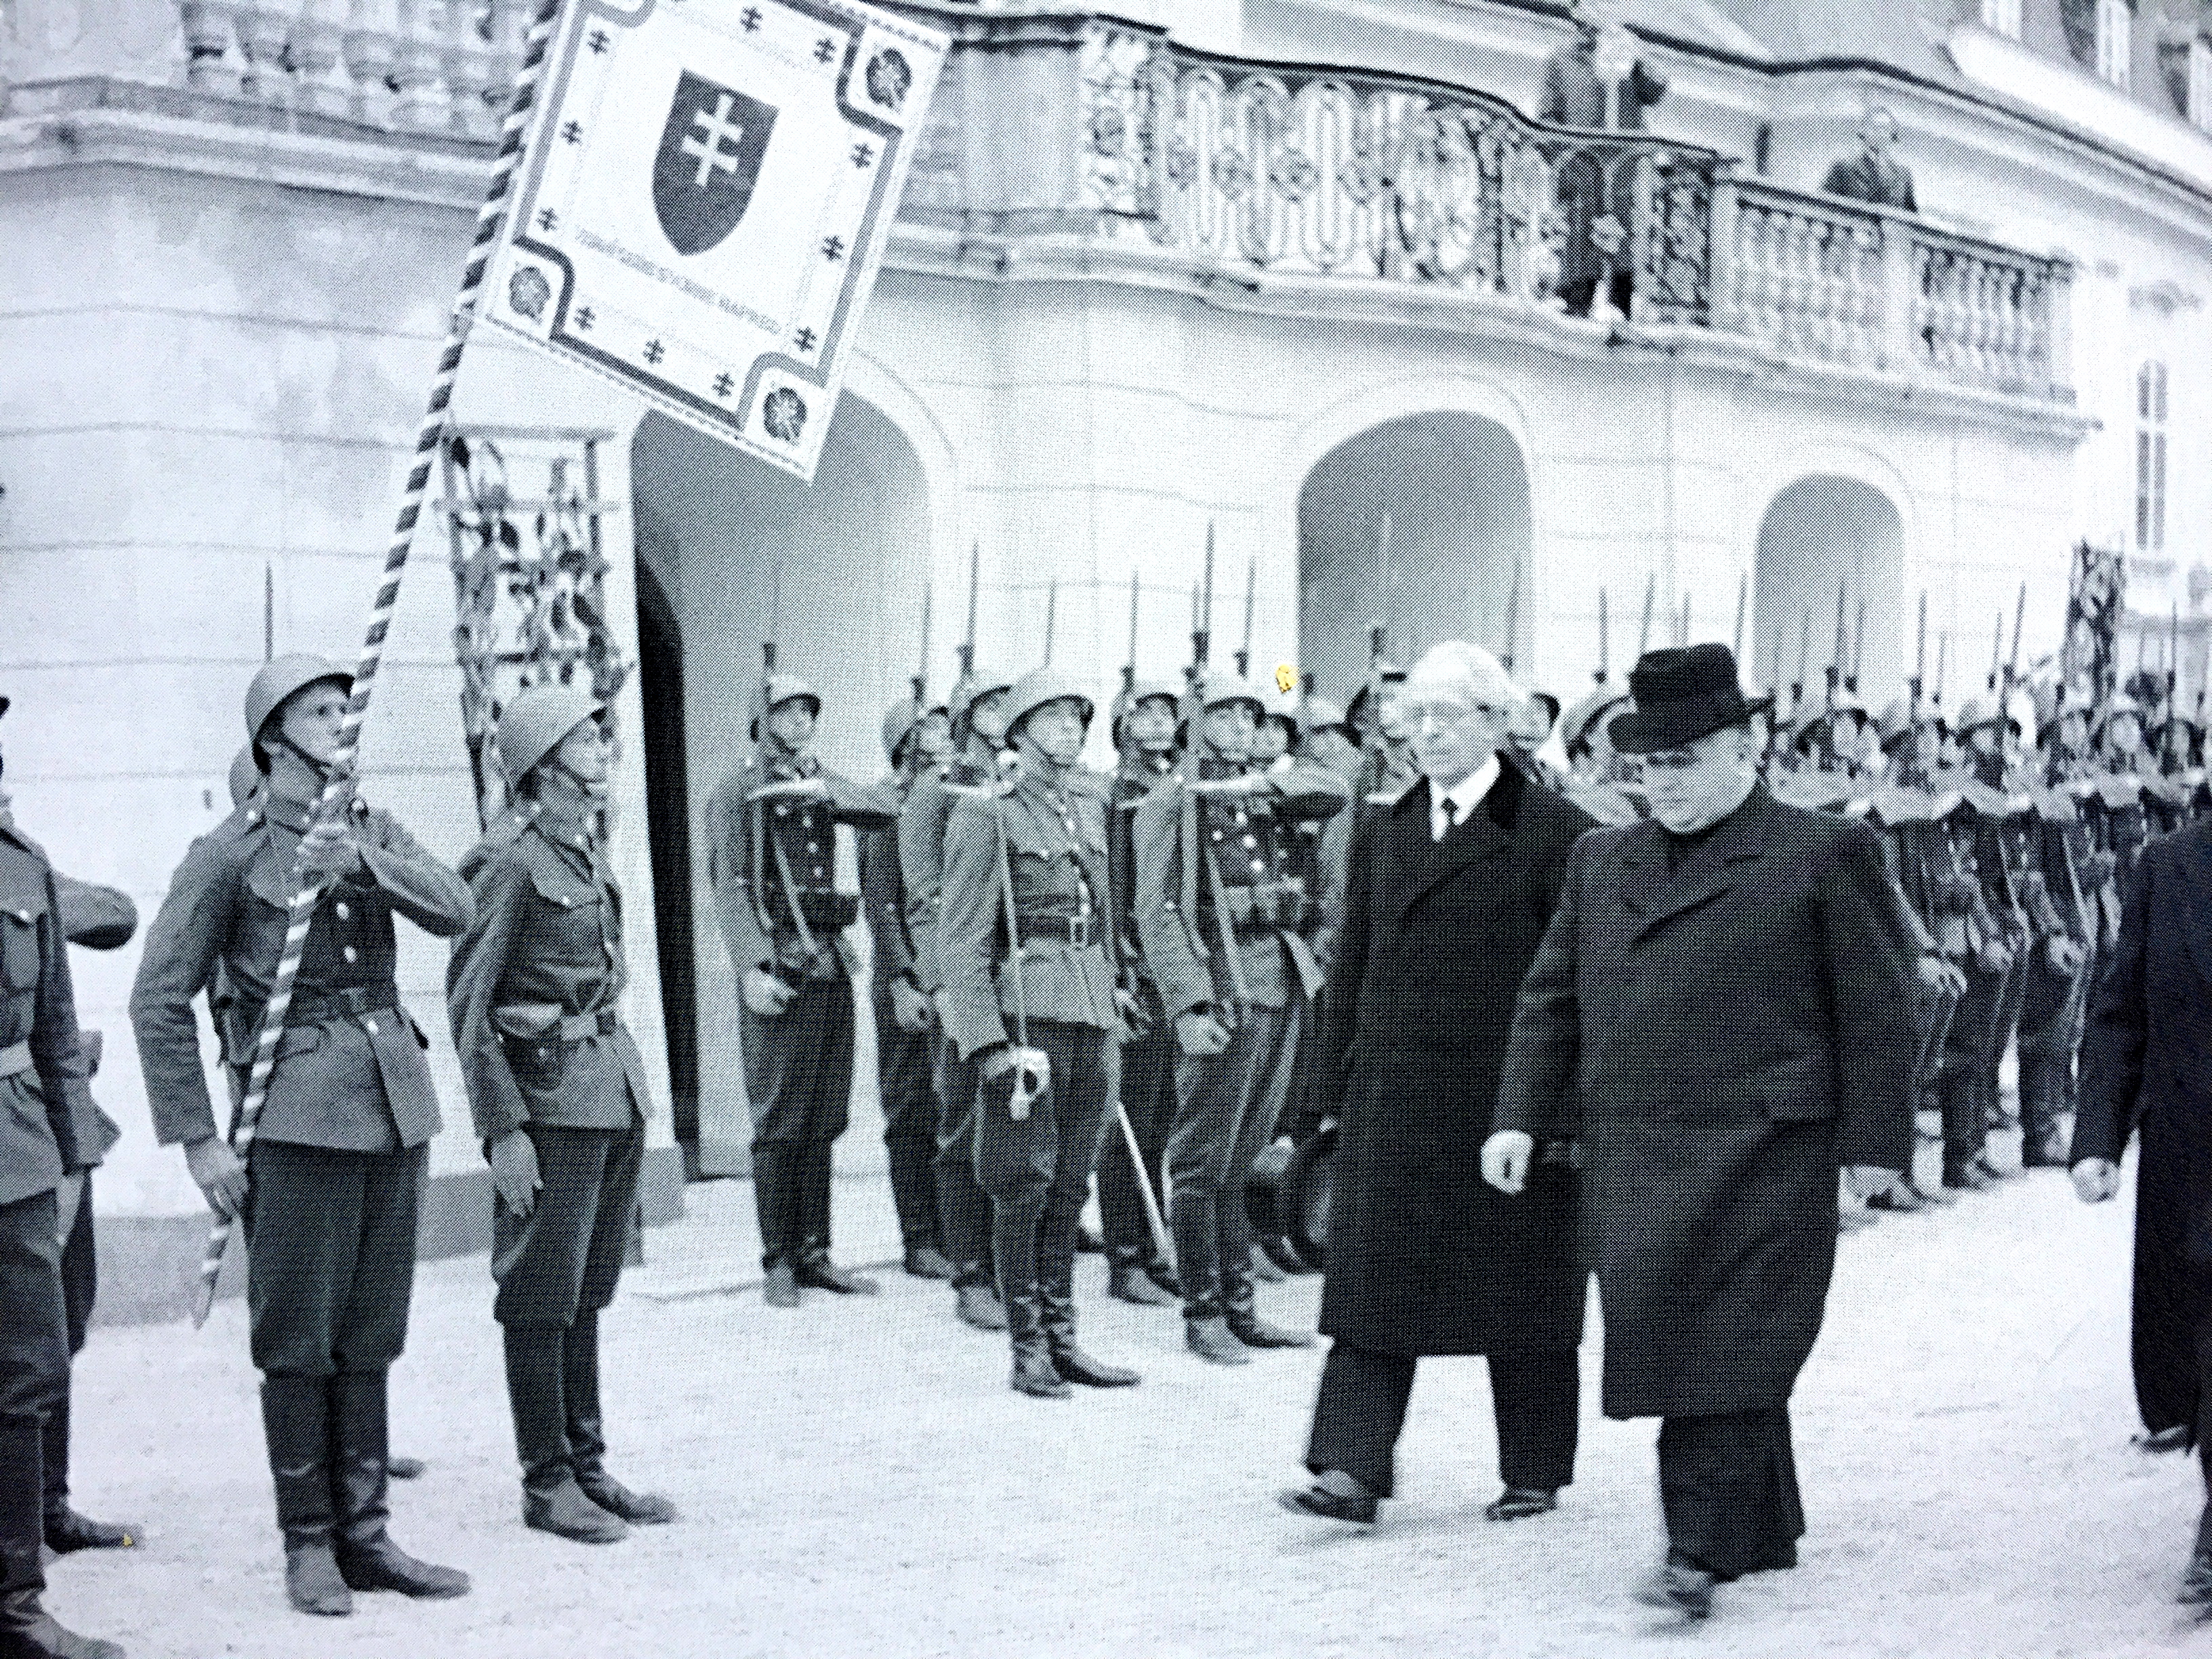 Prezident prvej SR Jozef Tiso po slávnostnej inaugurácii kráča s predsedom vlády Vojtechom Tukom z Prezidentského paláca. (Foto: archív)